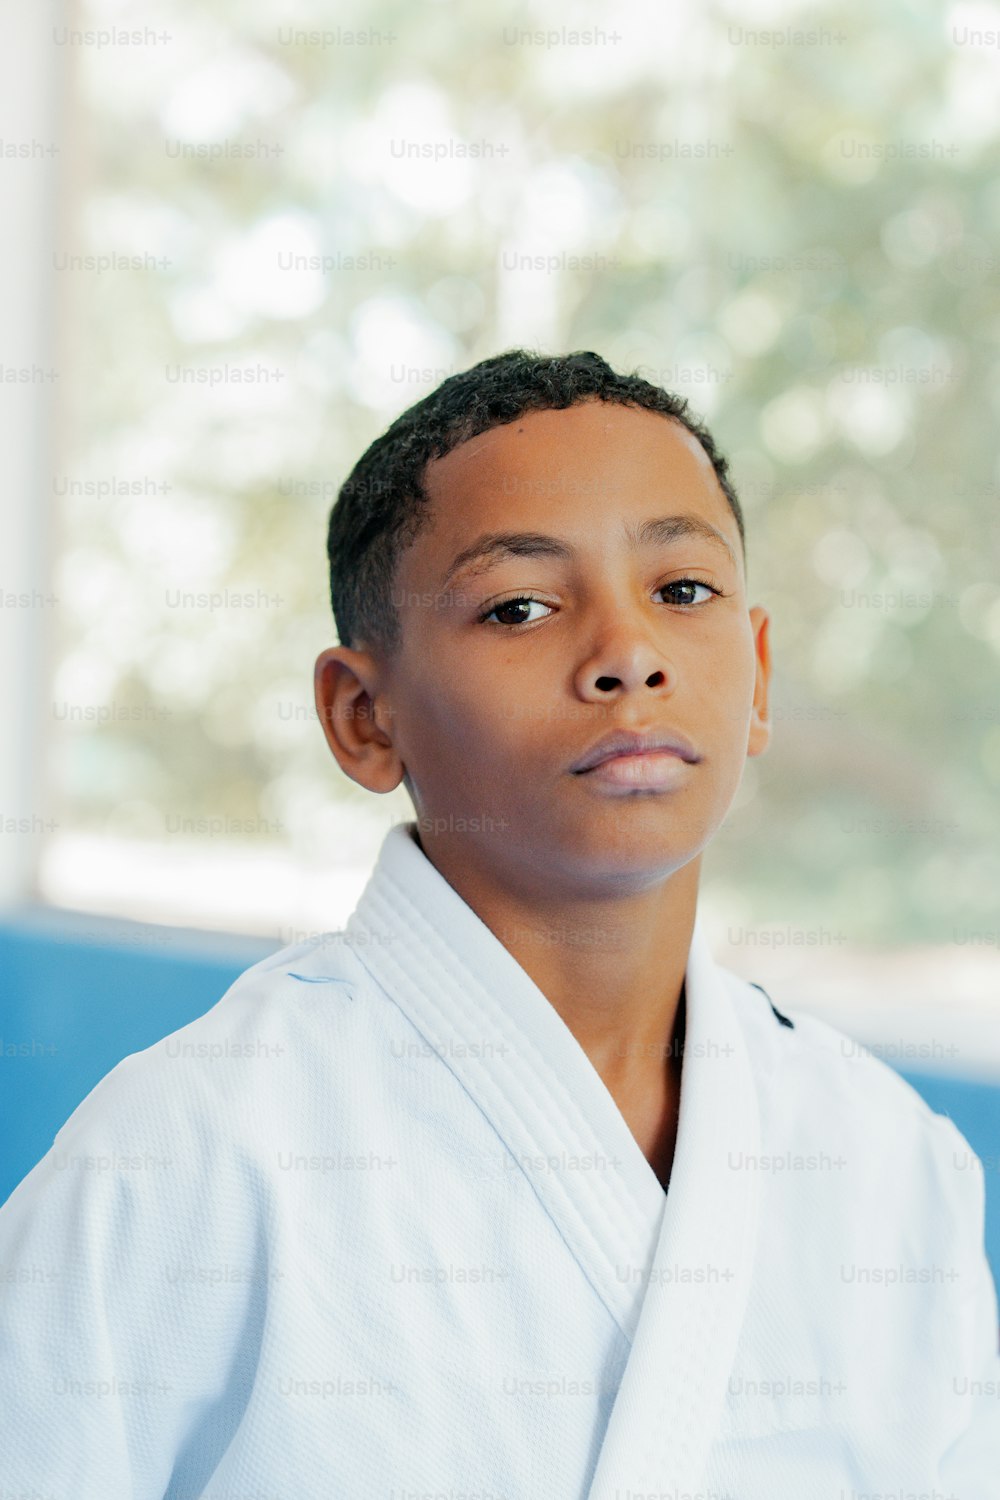 Un niño con un traje blanco de karate